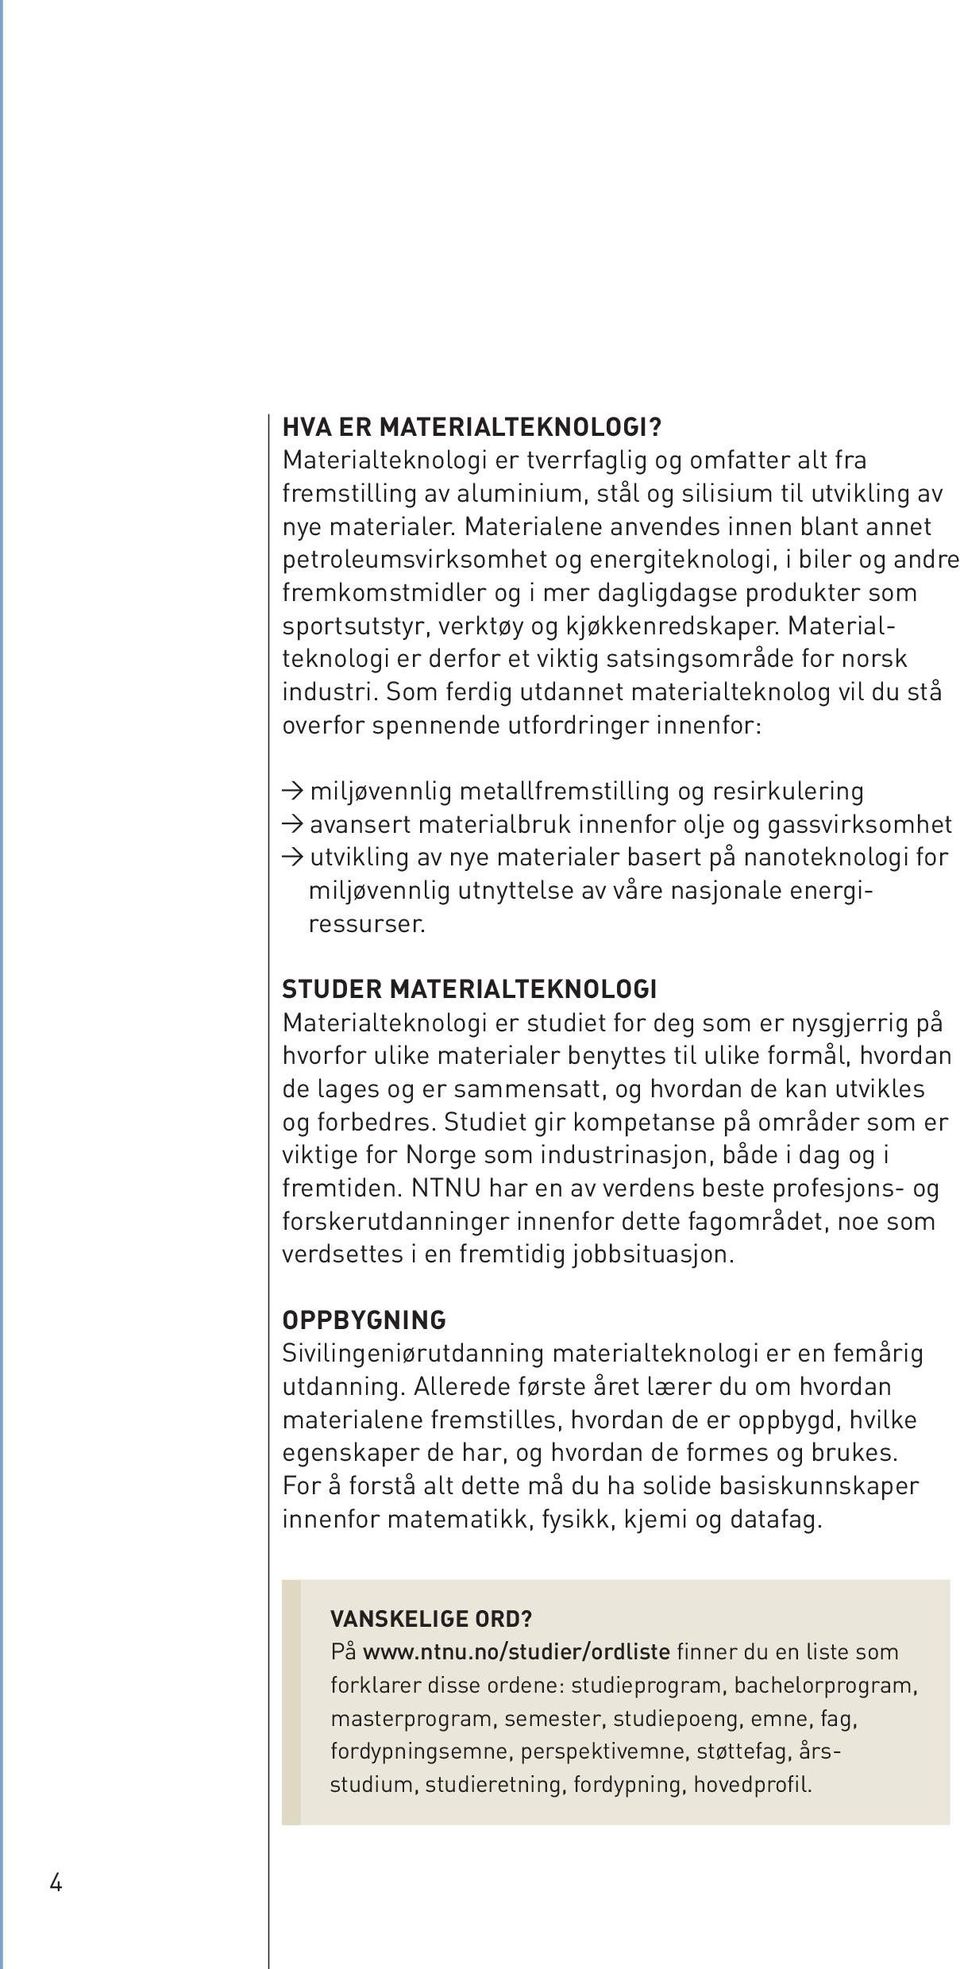 Materialteknologi er derfor et viktig satsingsområde for norsk industri.